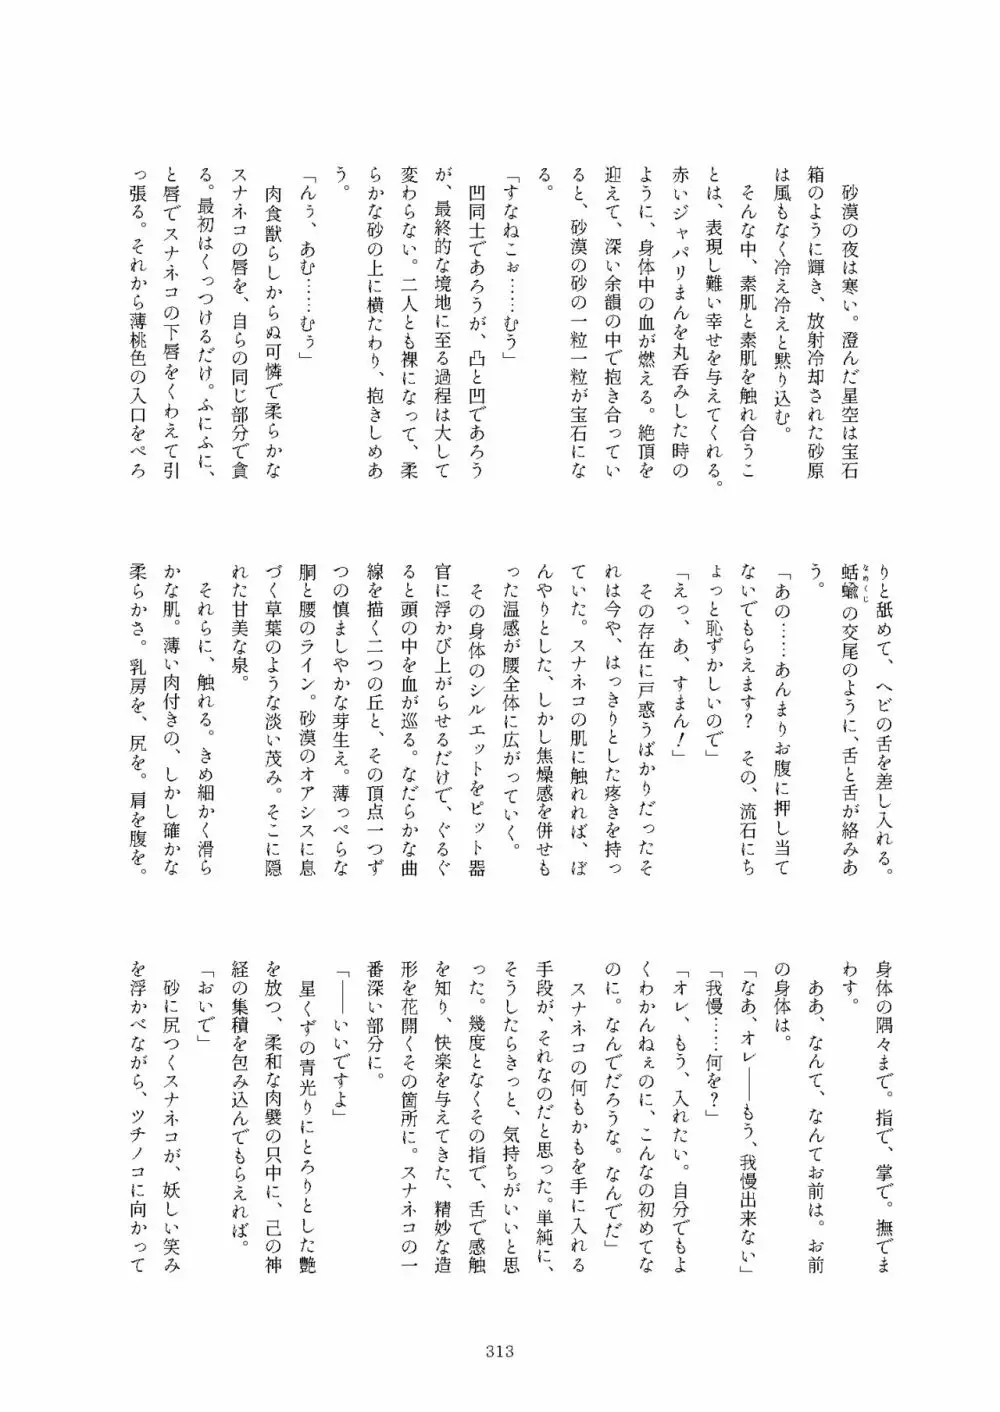 フレンズまえしっぽ合同誌 - page313